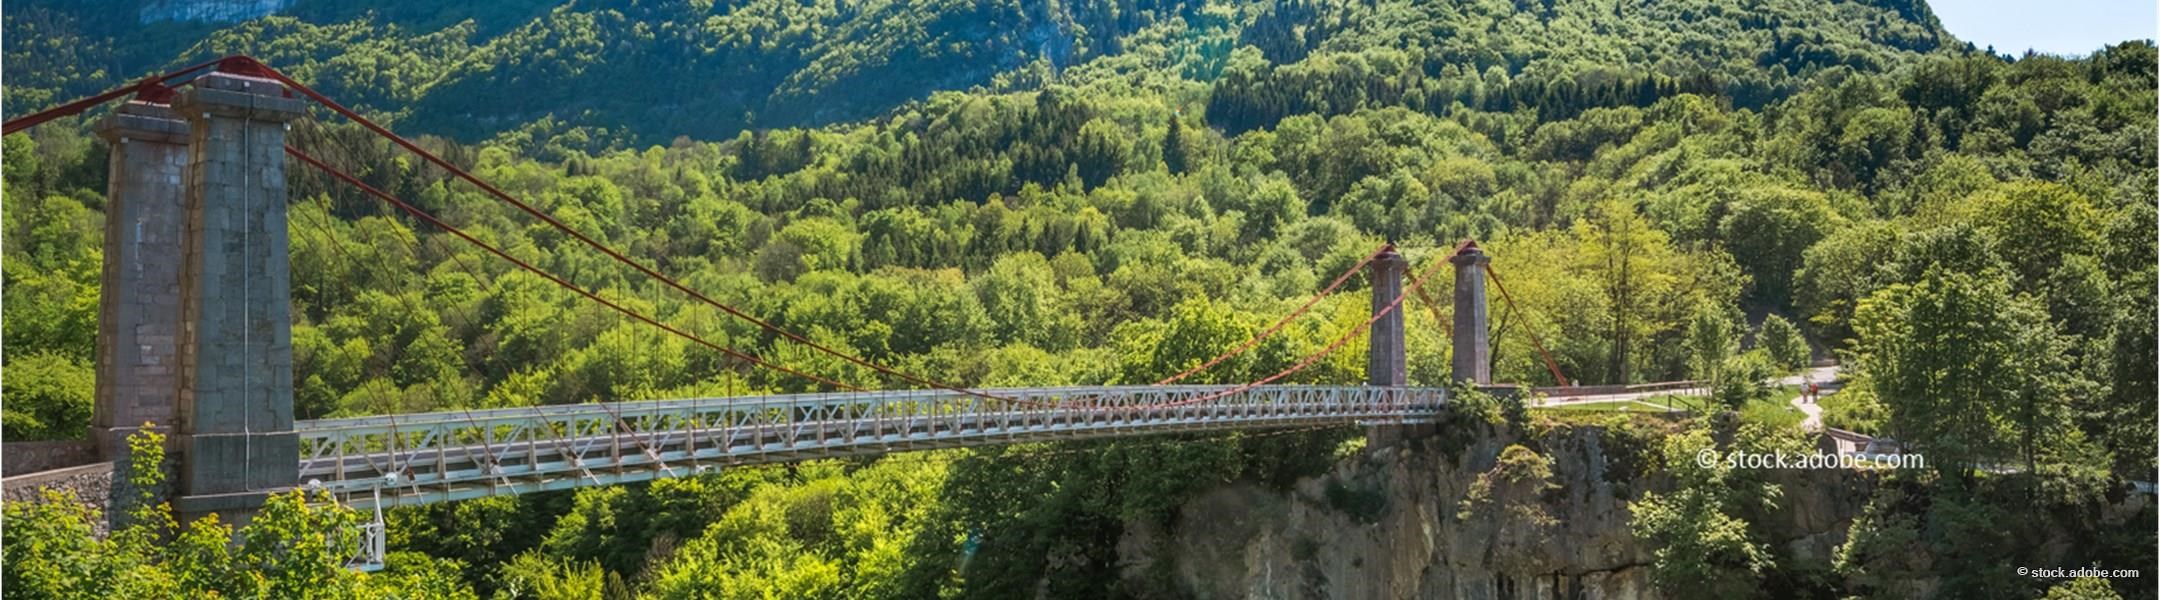 Le pont de l'Abîme Haute Savoie 